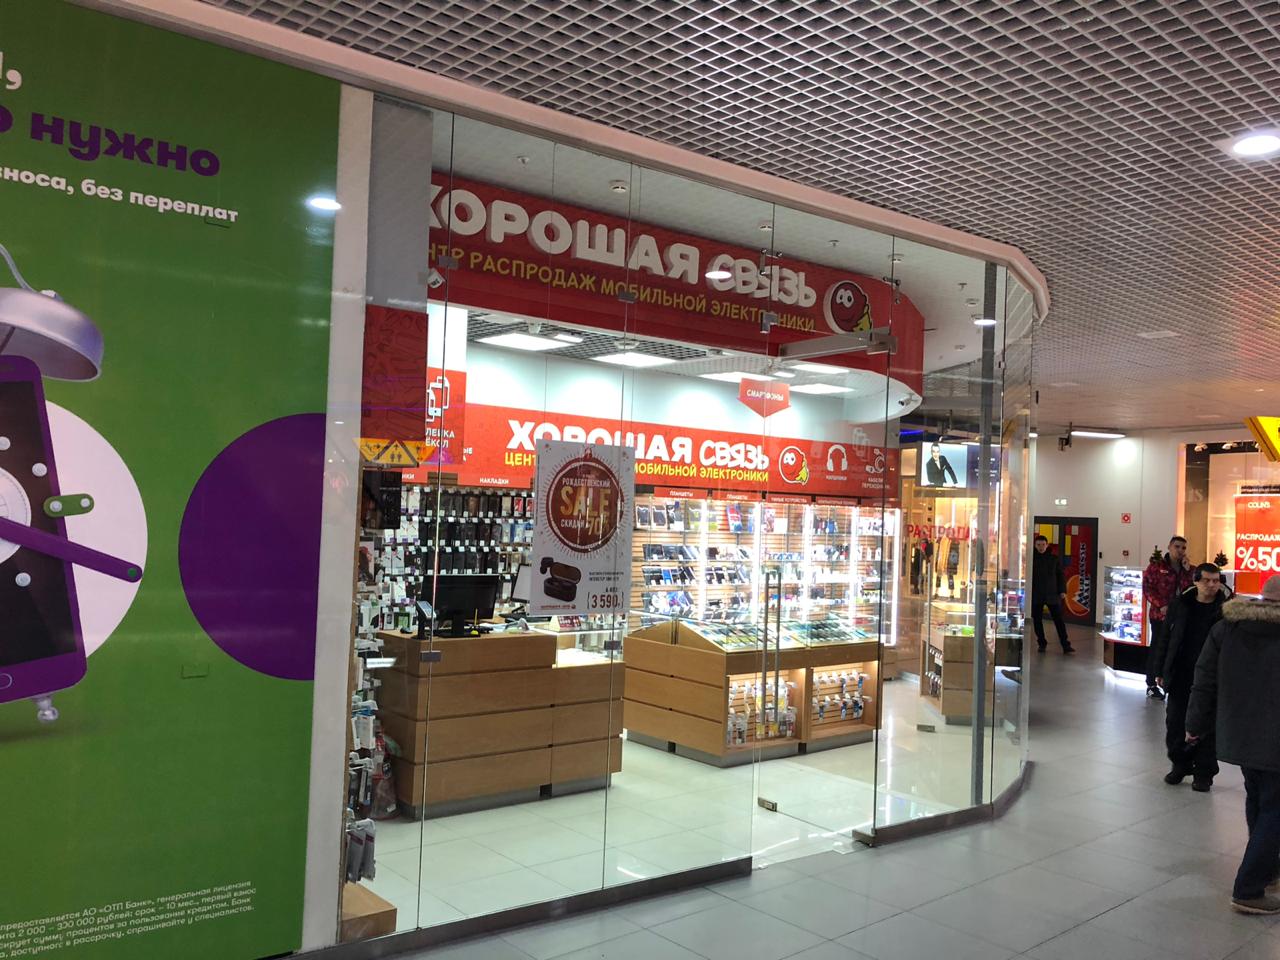 Магазин Сотовой Электроники